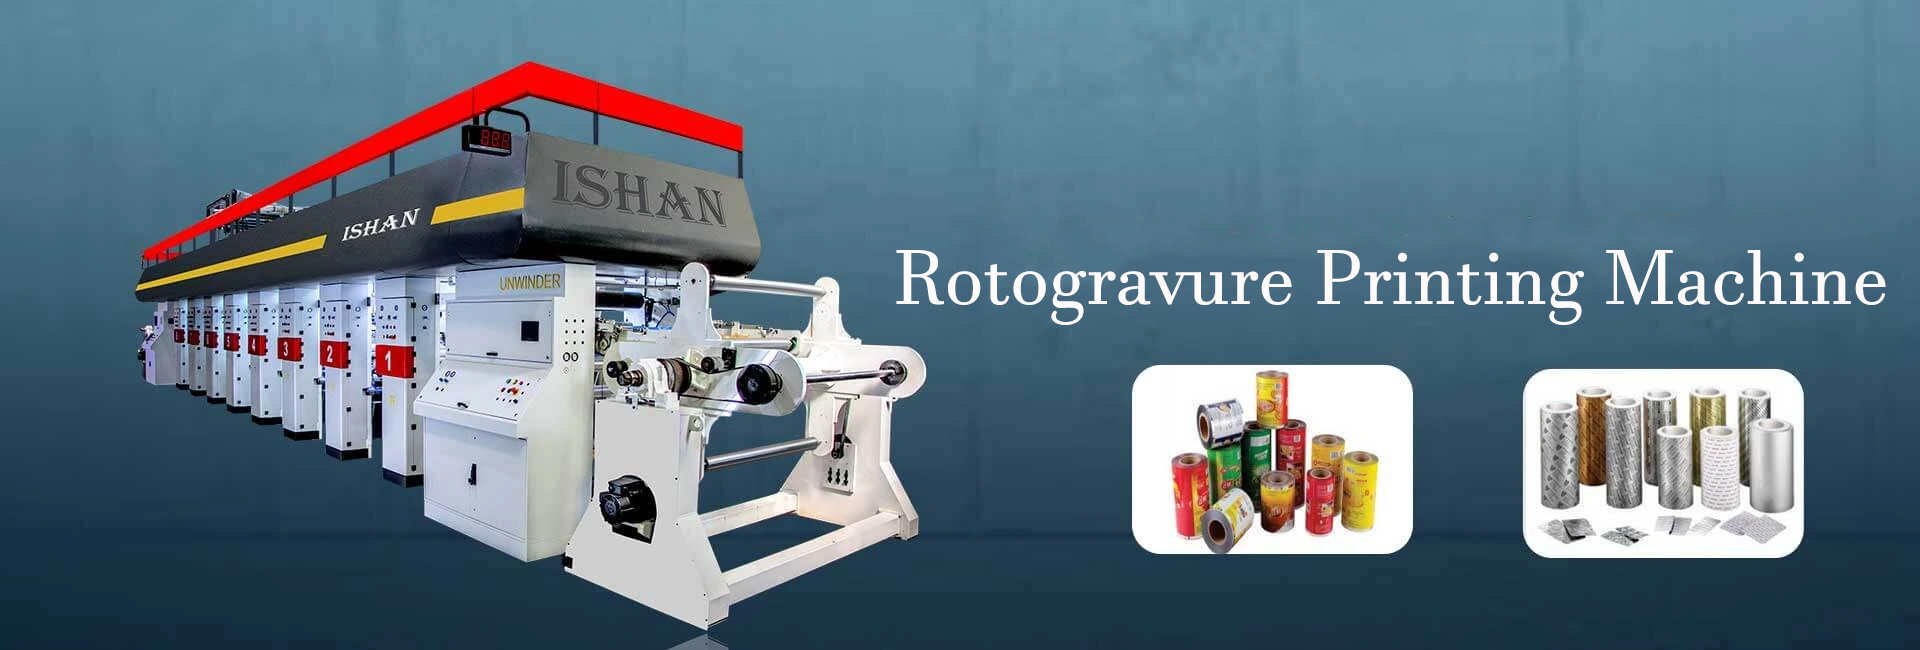 Rotogravure Printing Machine in India